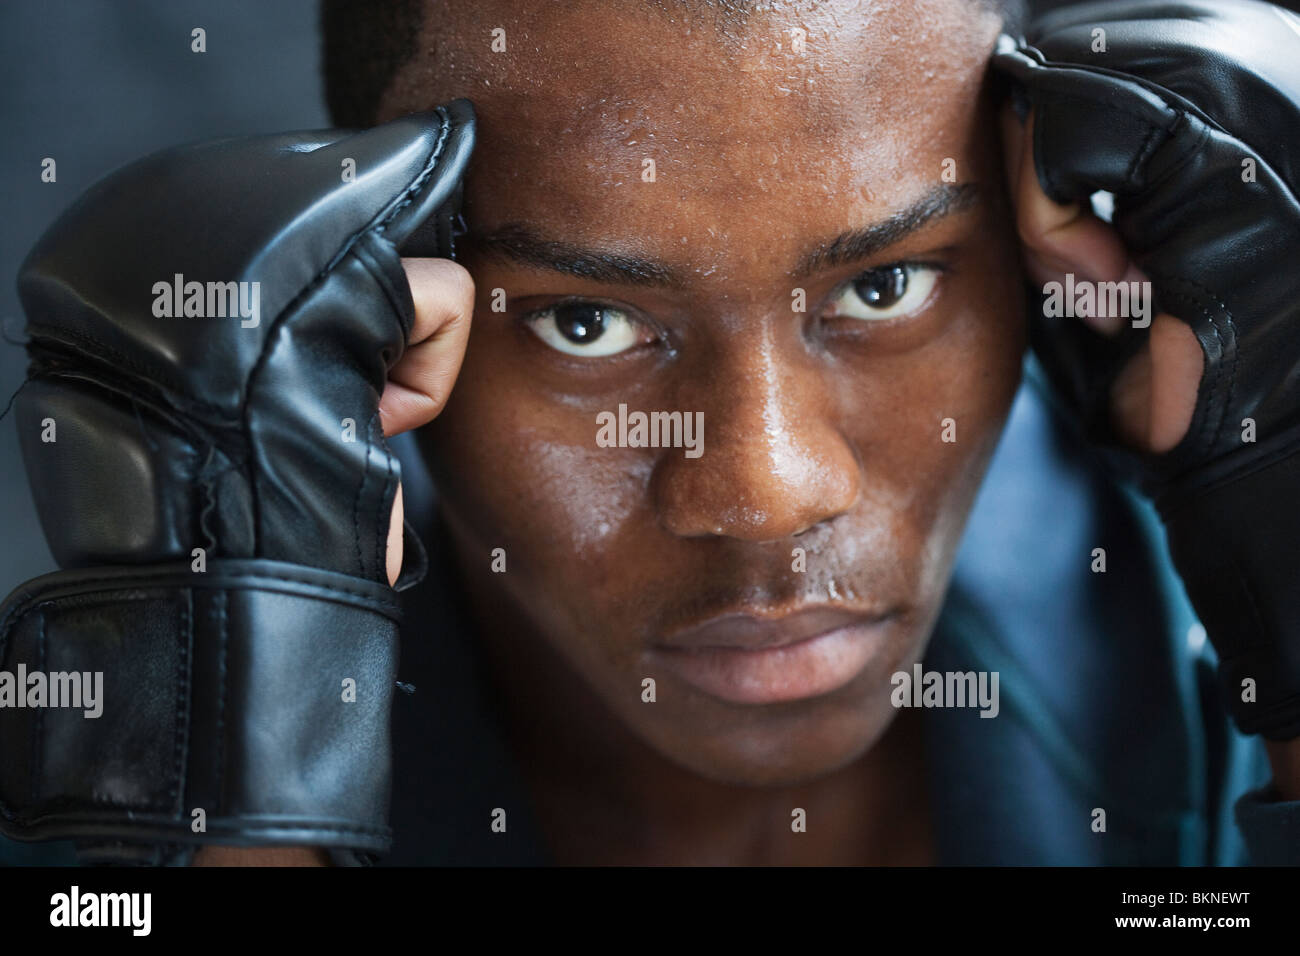 La sudation mixed race man dans des gants rembourrés Banque D'Images